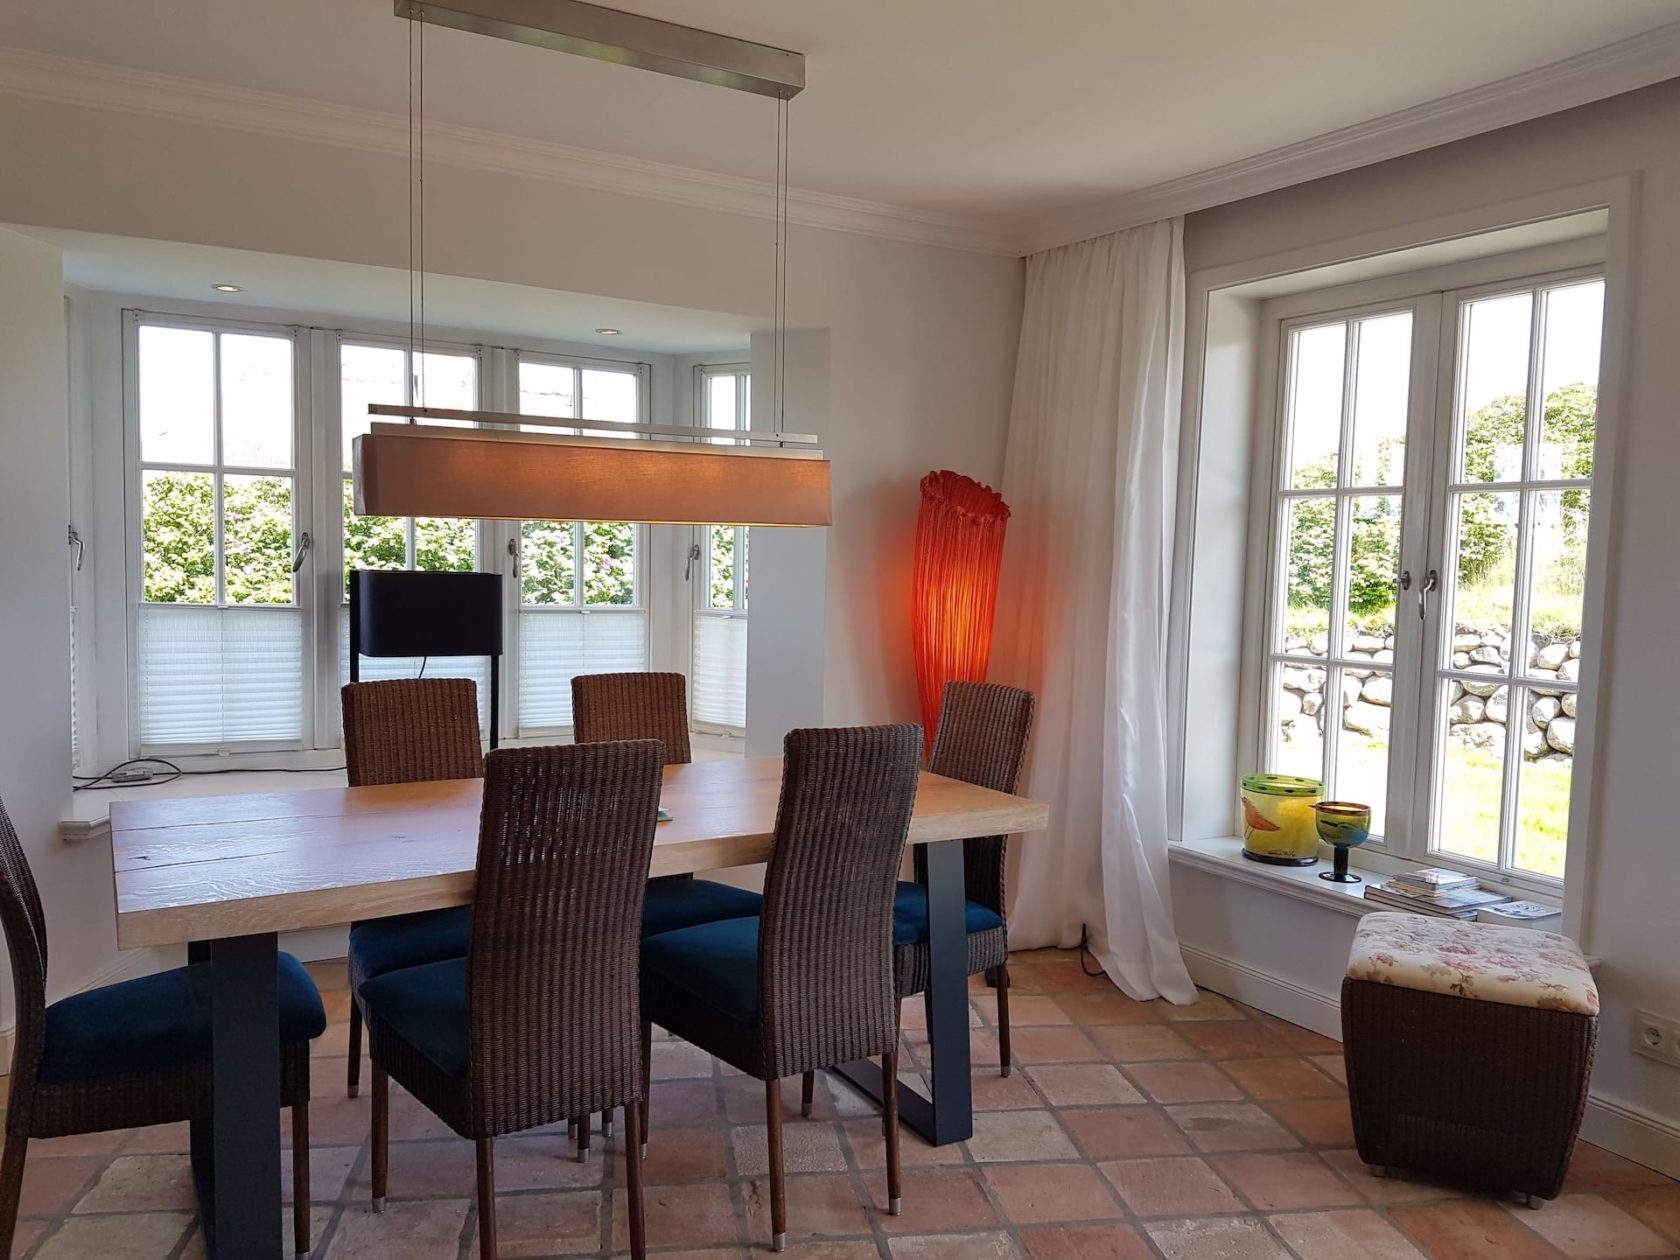 Esszimmer mit Esstisch für 6 Personen im Ferienhaus "Haus zwischen den Meeren" in Rantum auf Sylt